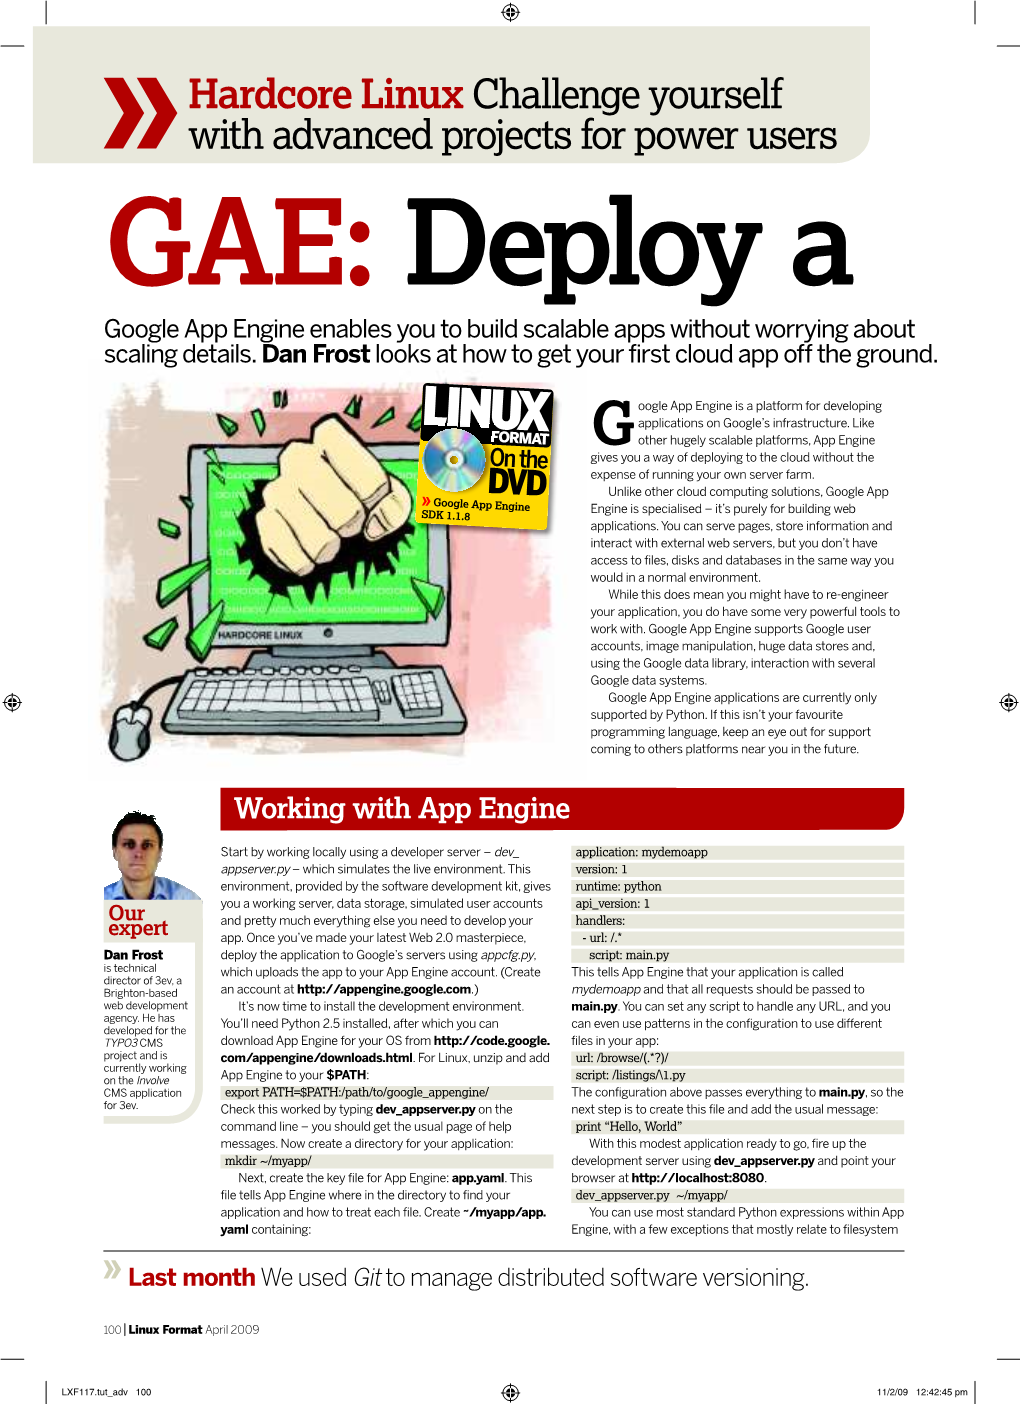 GAE: Deploy a Web Application